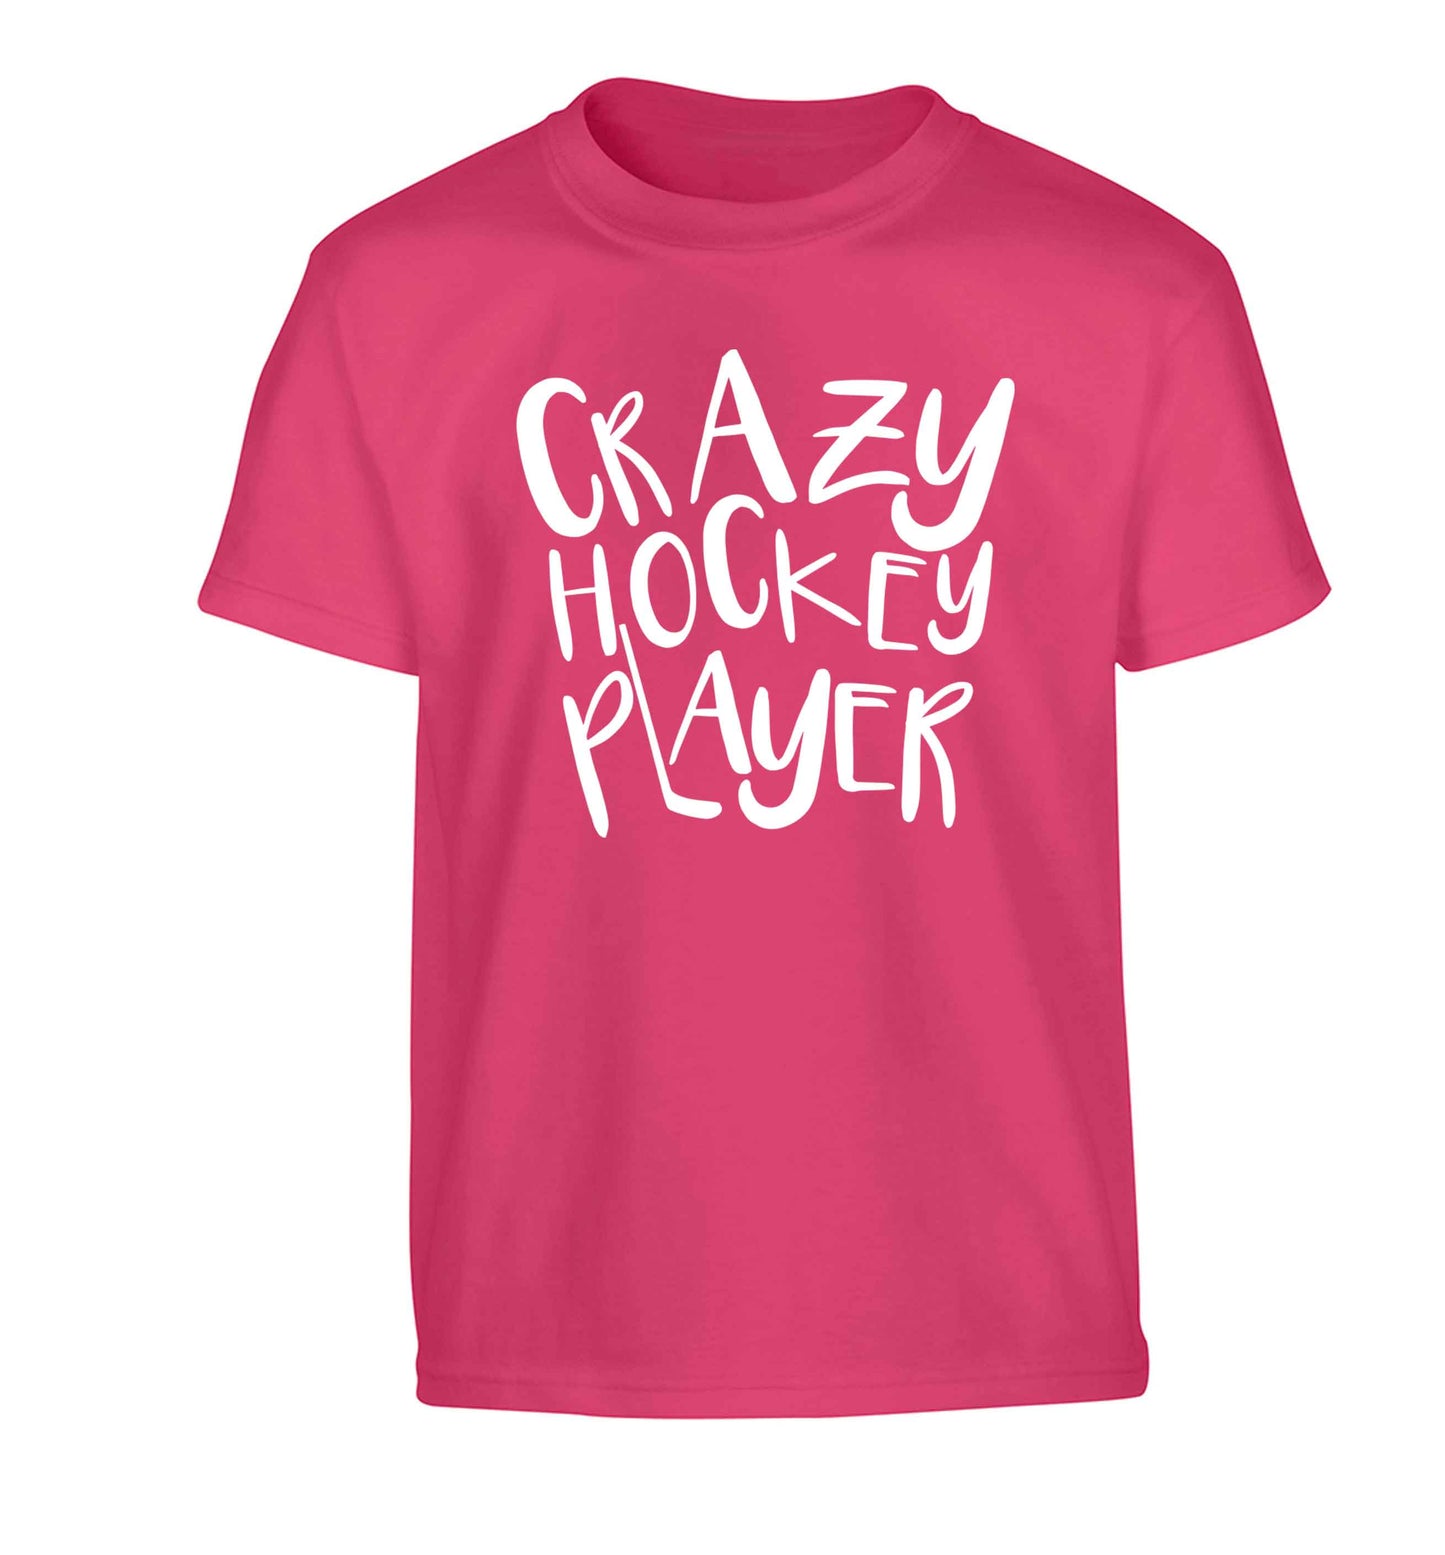 Crazy hockey player Children's pink Tshirt 12-13 Years